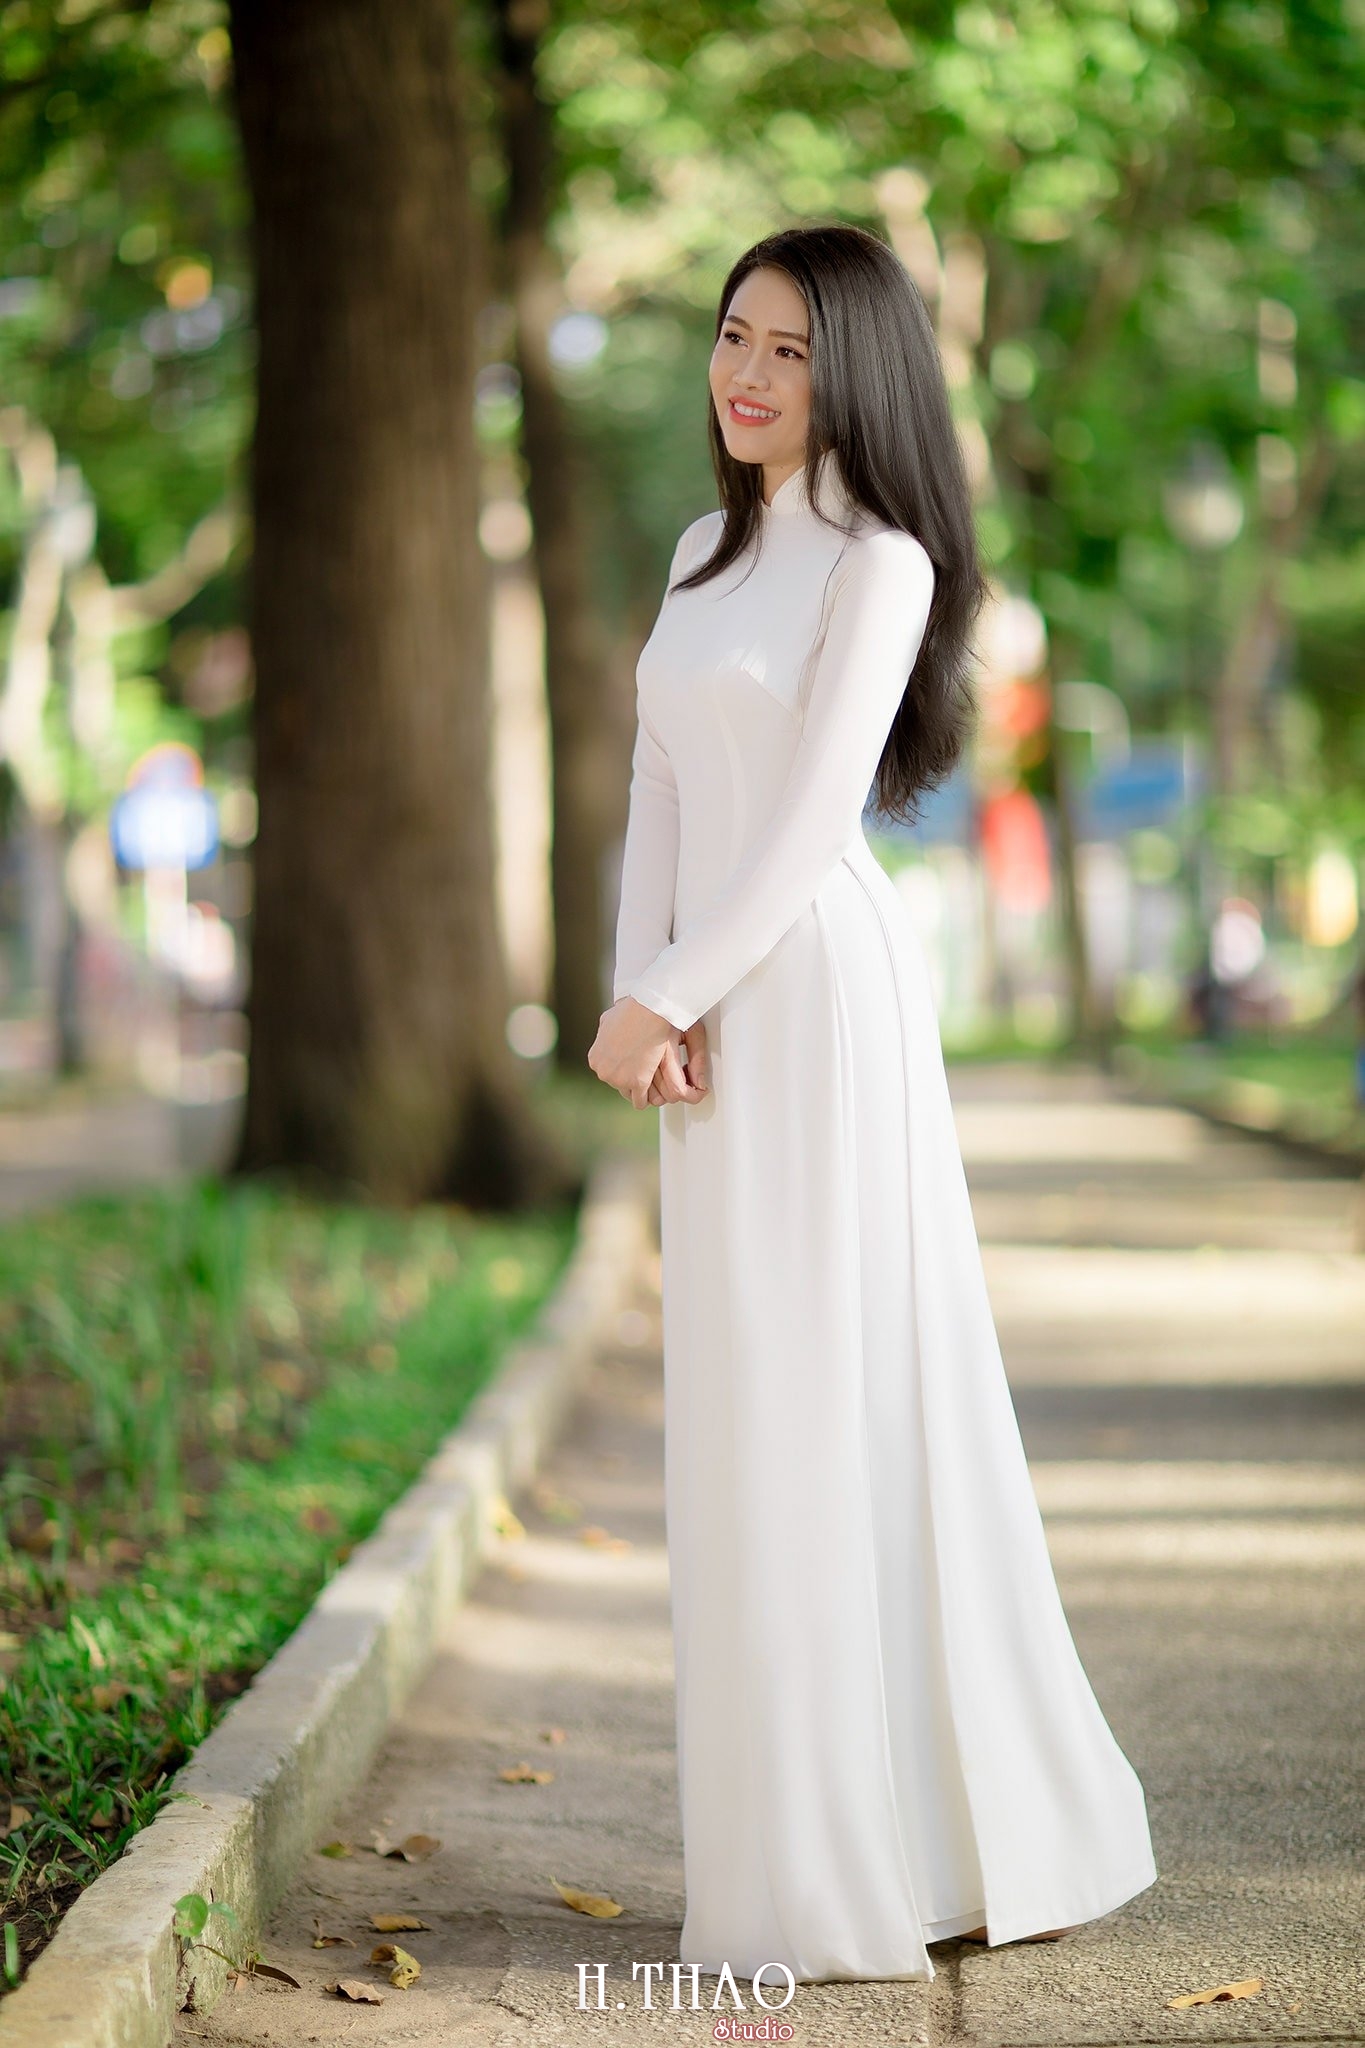 ao dai Misa 10 - Thiếu nữ bên tà áo dài trắng chụp tại nhà thờ Đức Bà đẹp thướt tha